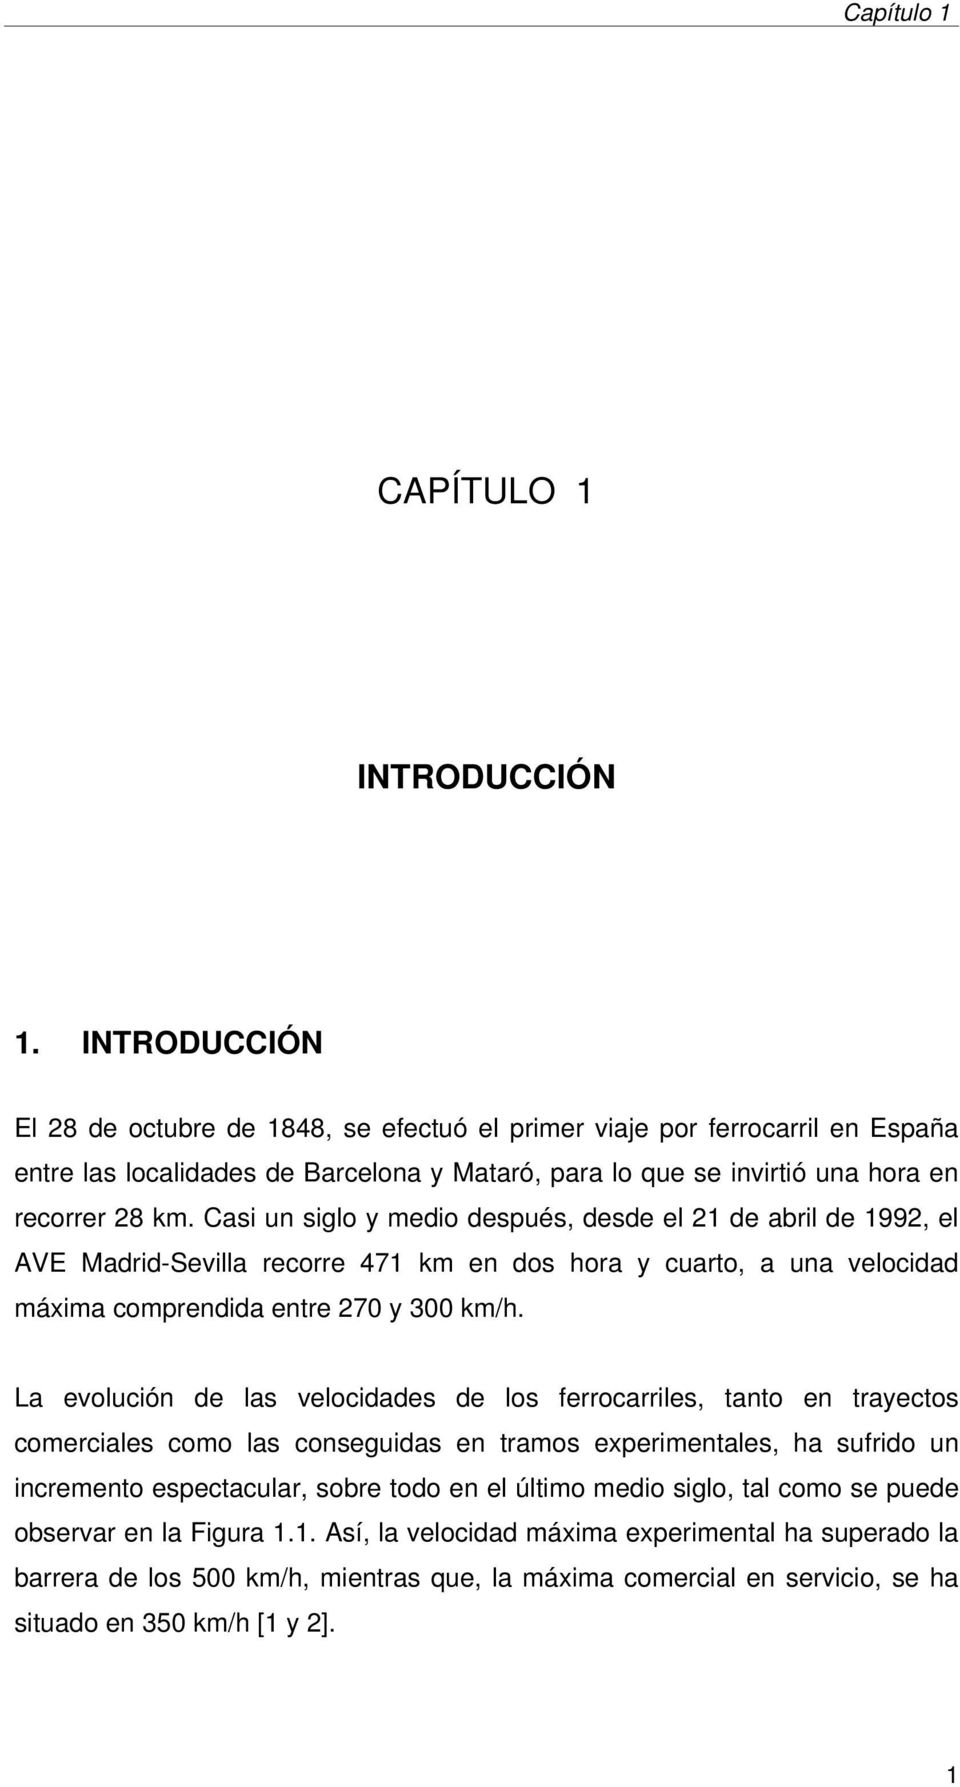 Casi un siglo y medio después, desde el 21 de abril de 1992, el AVE Madrid-Sevilla recorre 471 km en dos hora y cuarto, a una velocidad máxima comprendida entre 270 y 300 km/h.